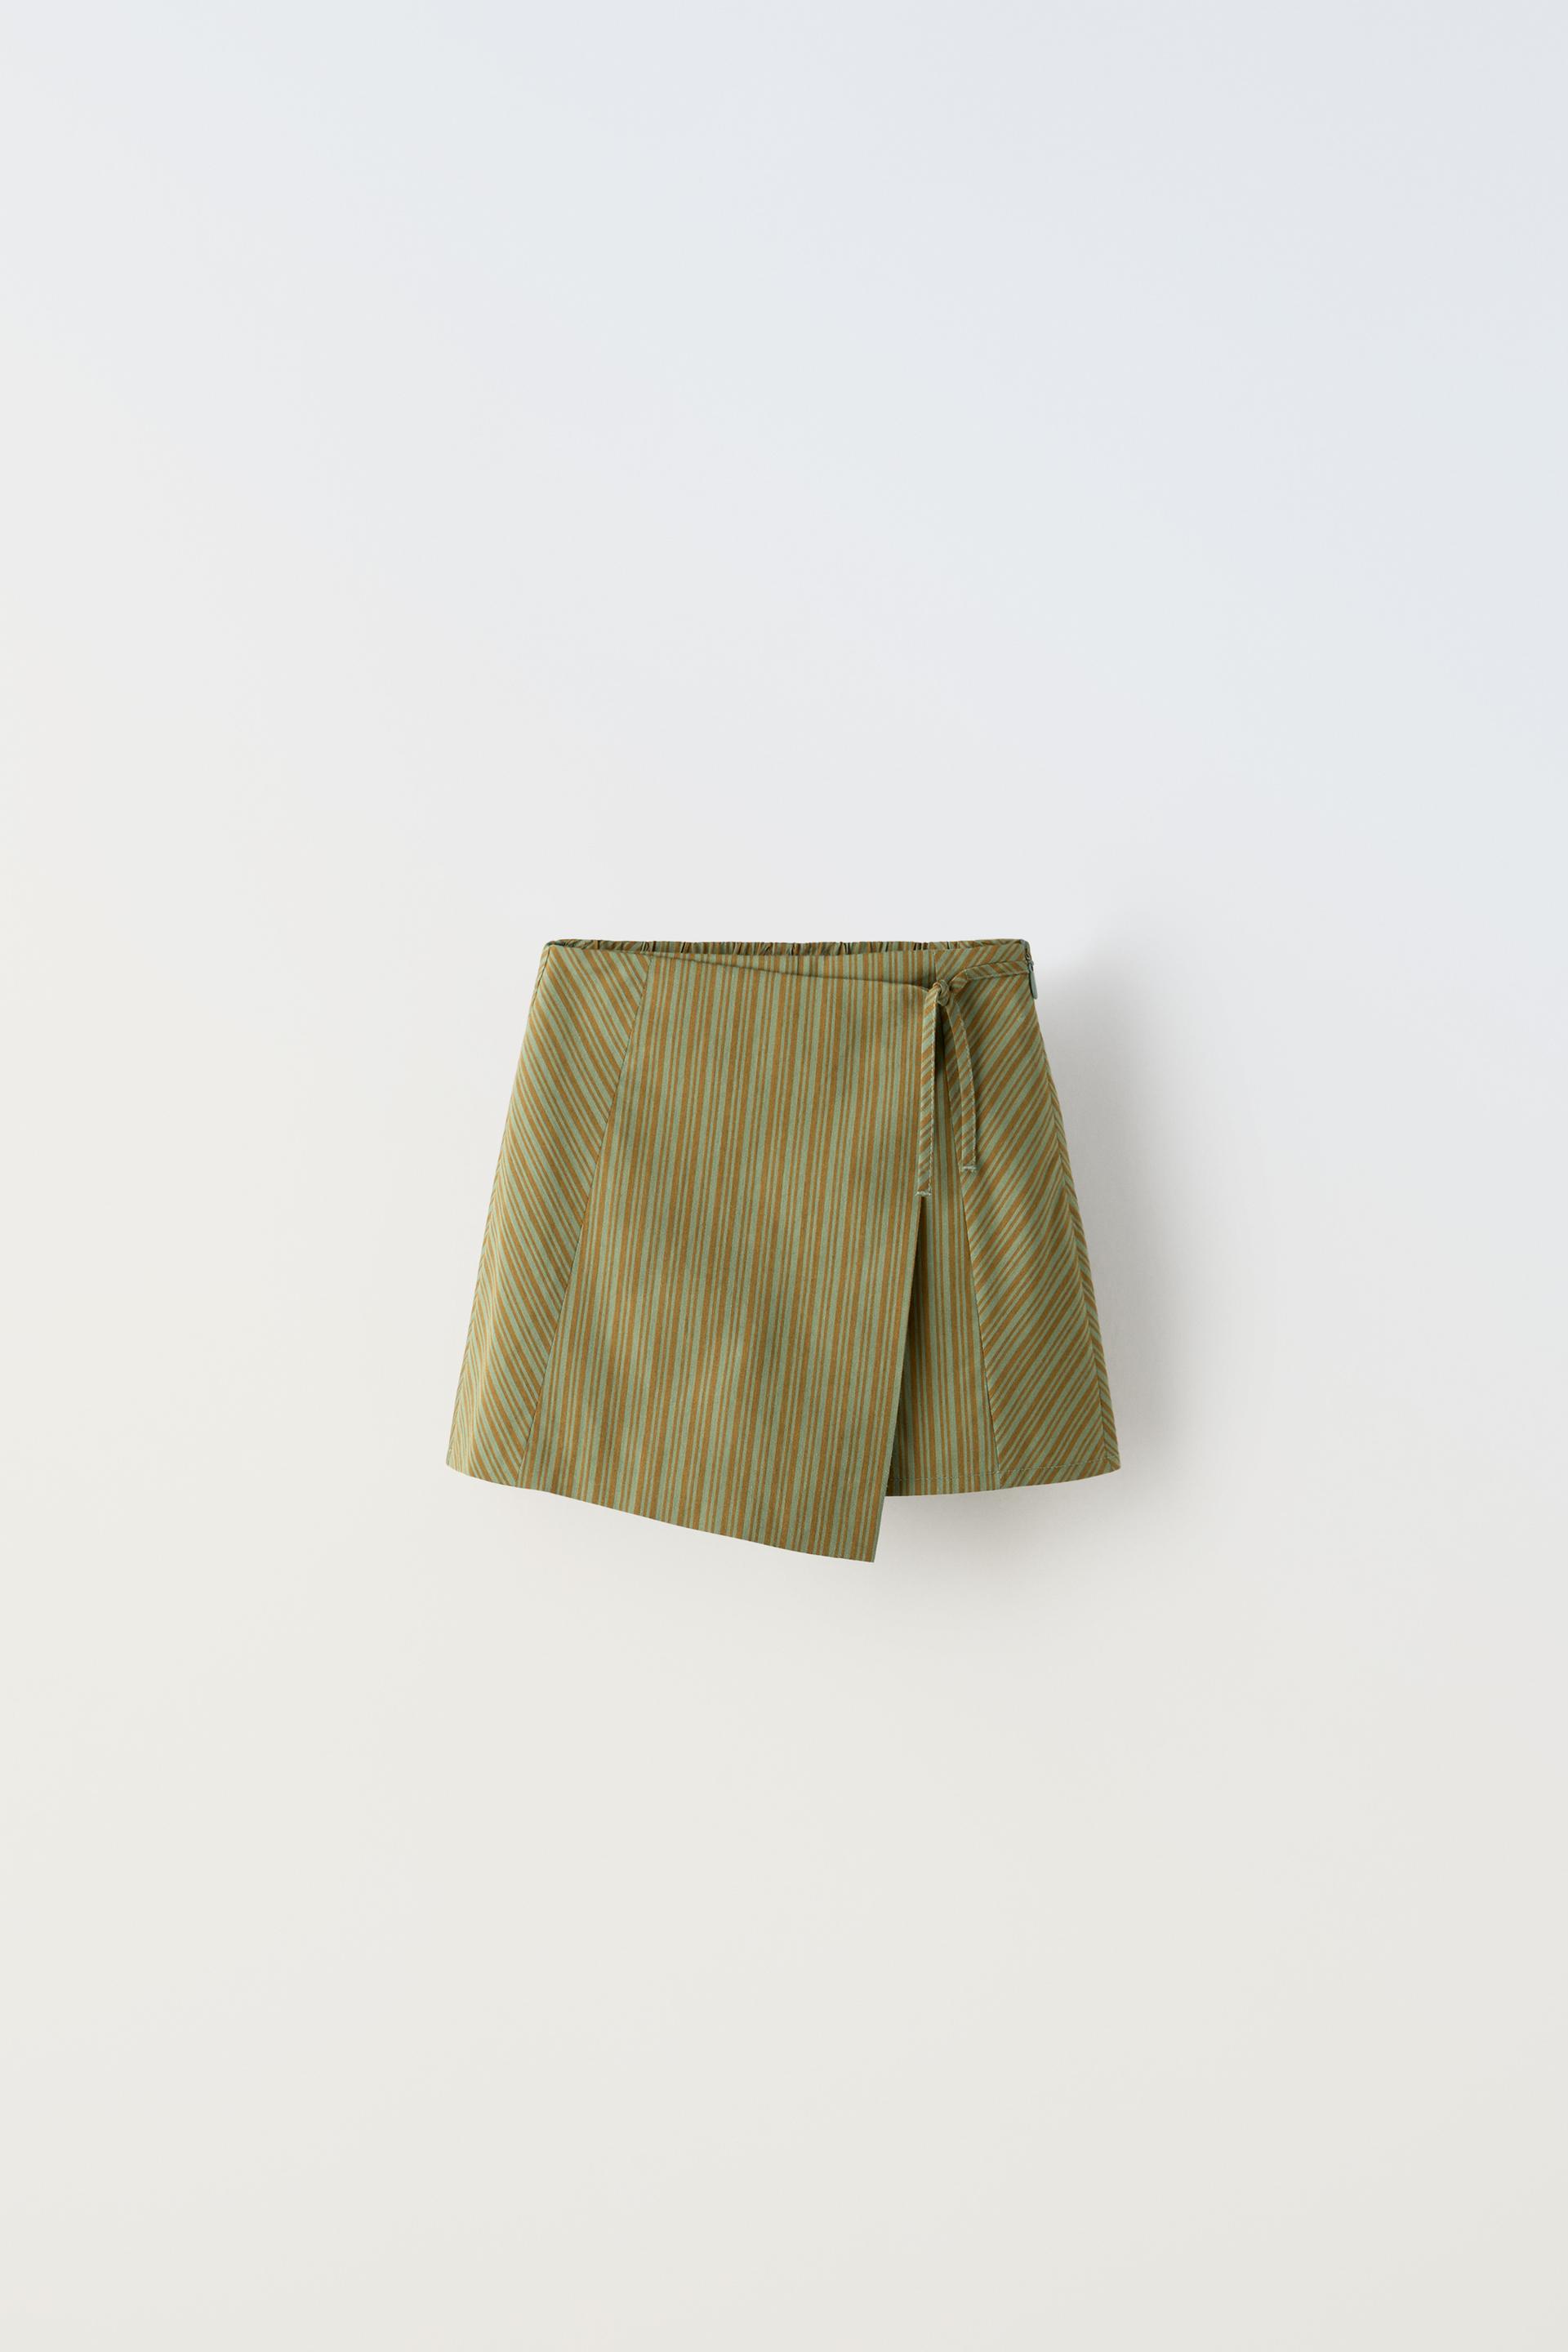 Юбка Zara Striped Sardong, зеленый юбка zara striped denim синий